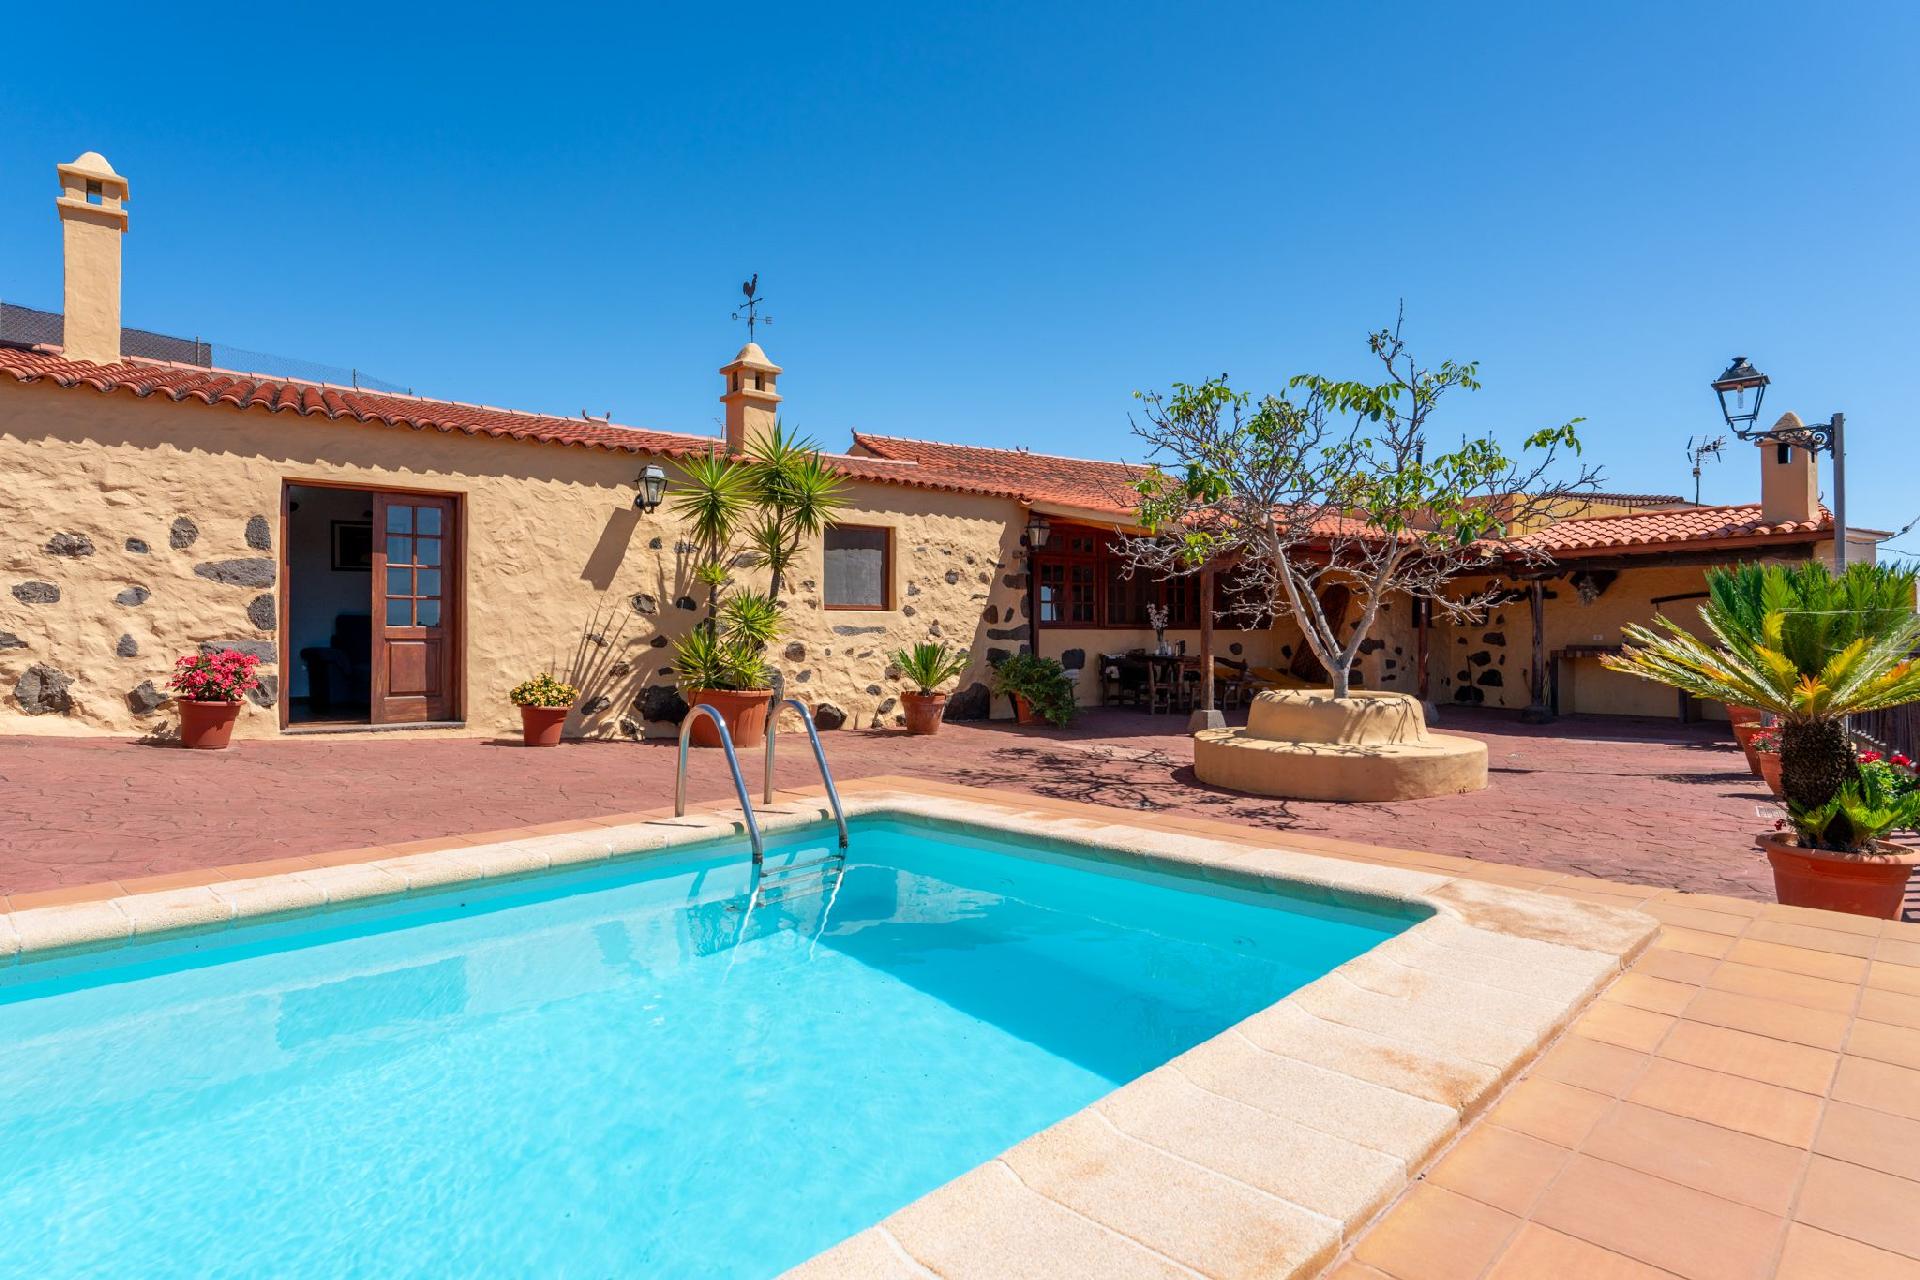 Finca im kanarischen Stil mit eigenem Pool und her Ferienhaus in Spanien